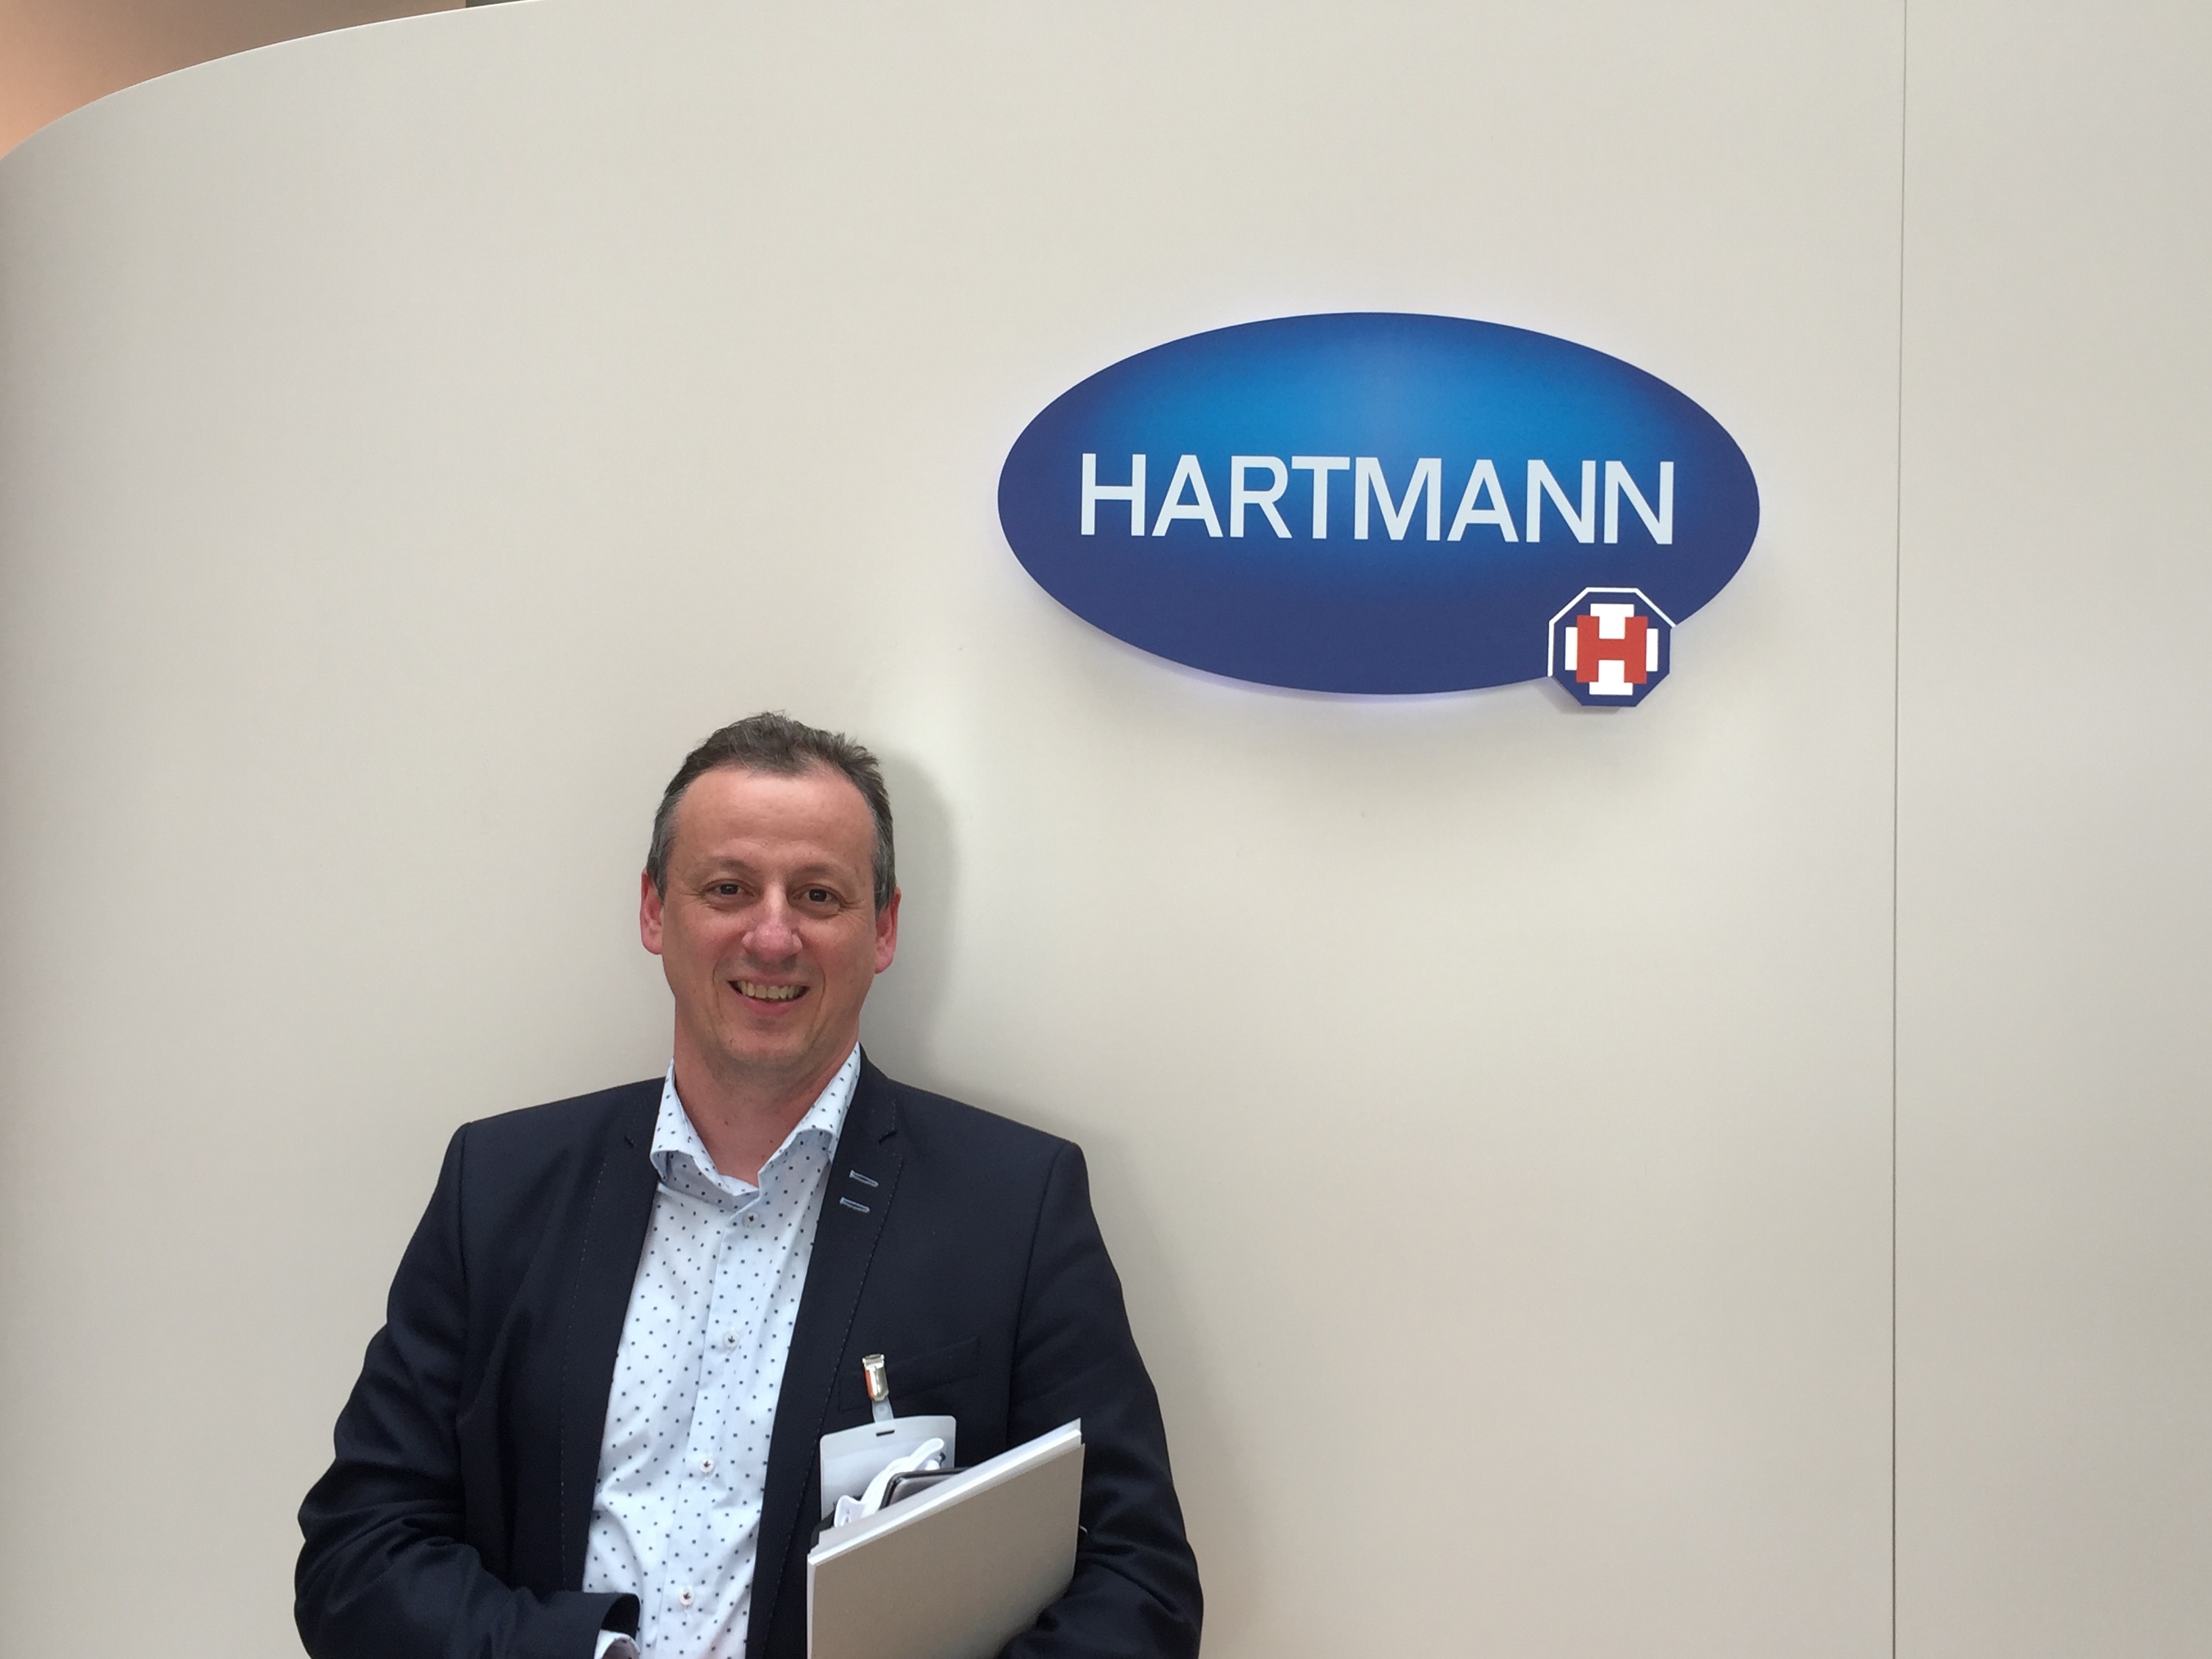 Stefan Brosens, HARTMANN Business Unit Manager